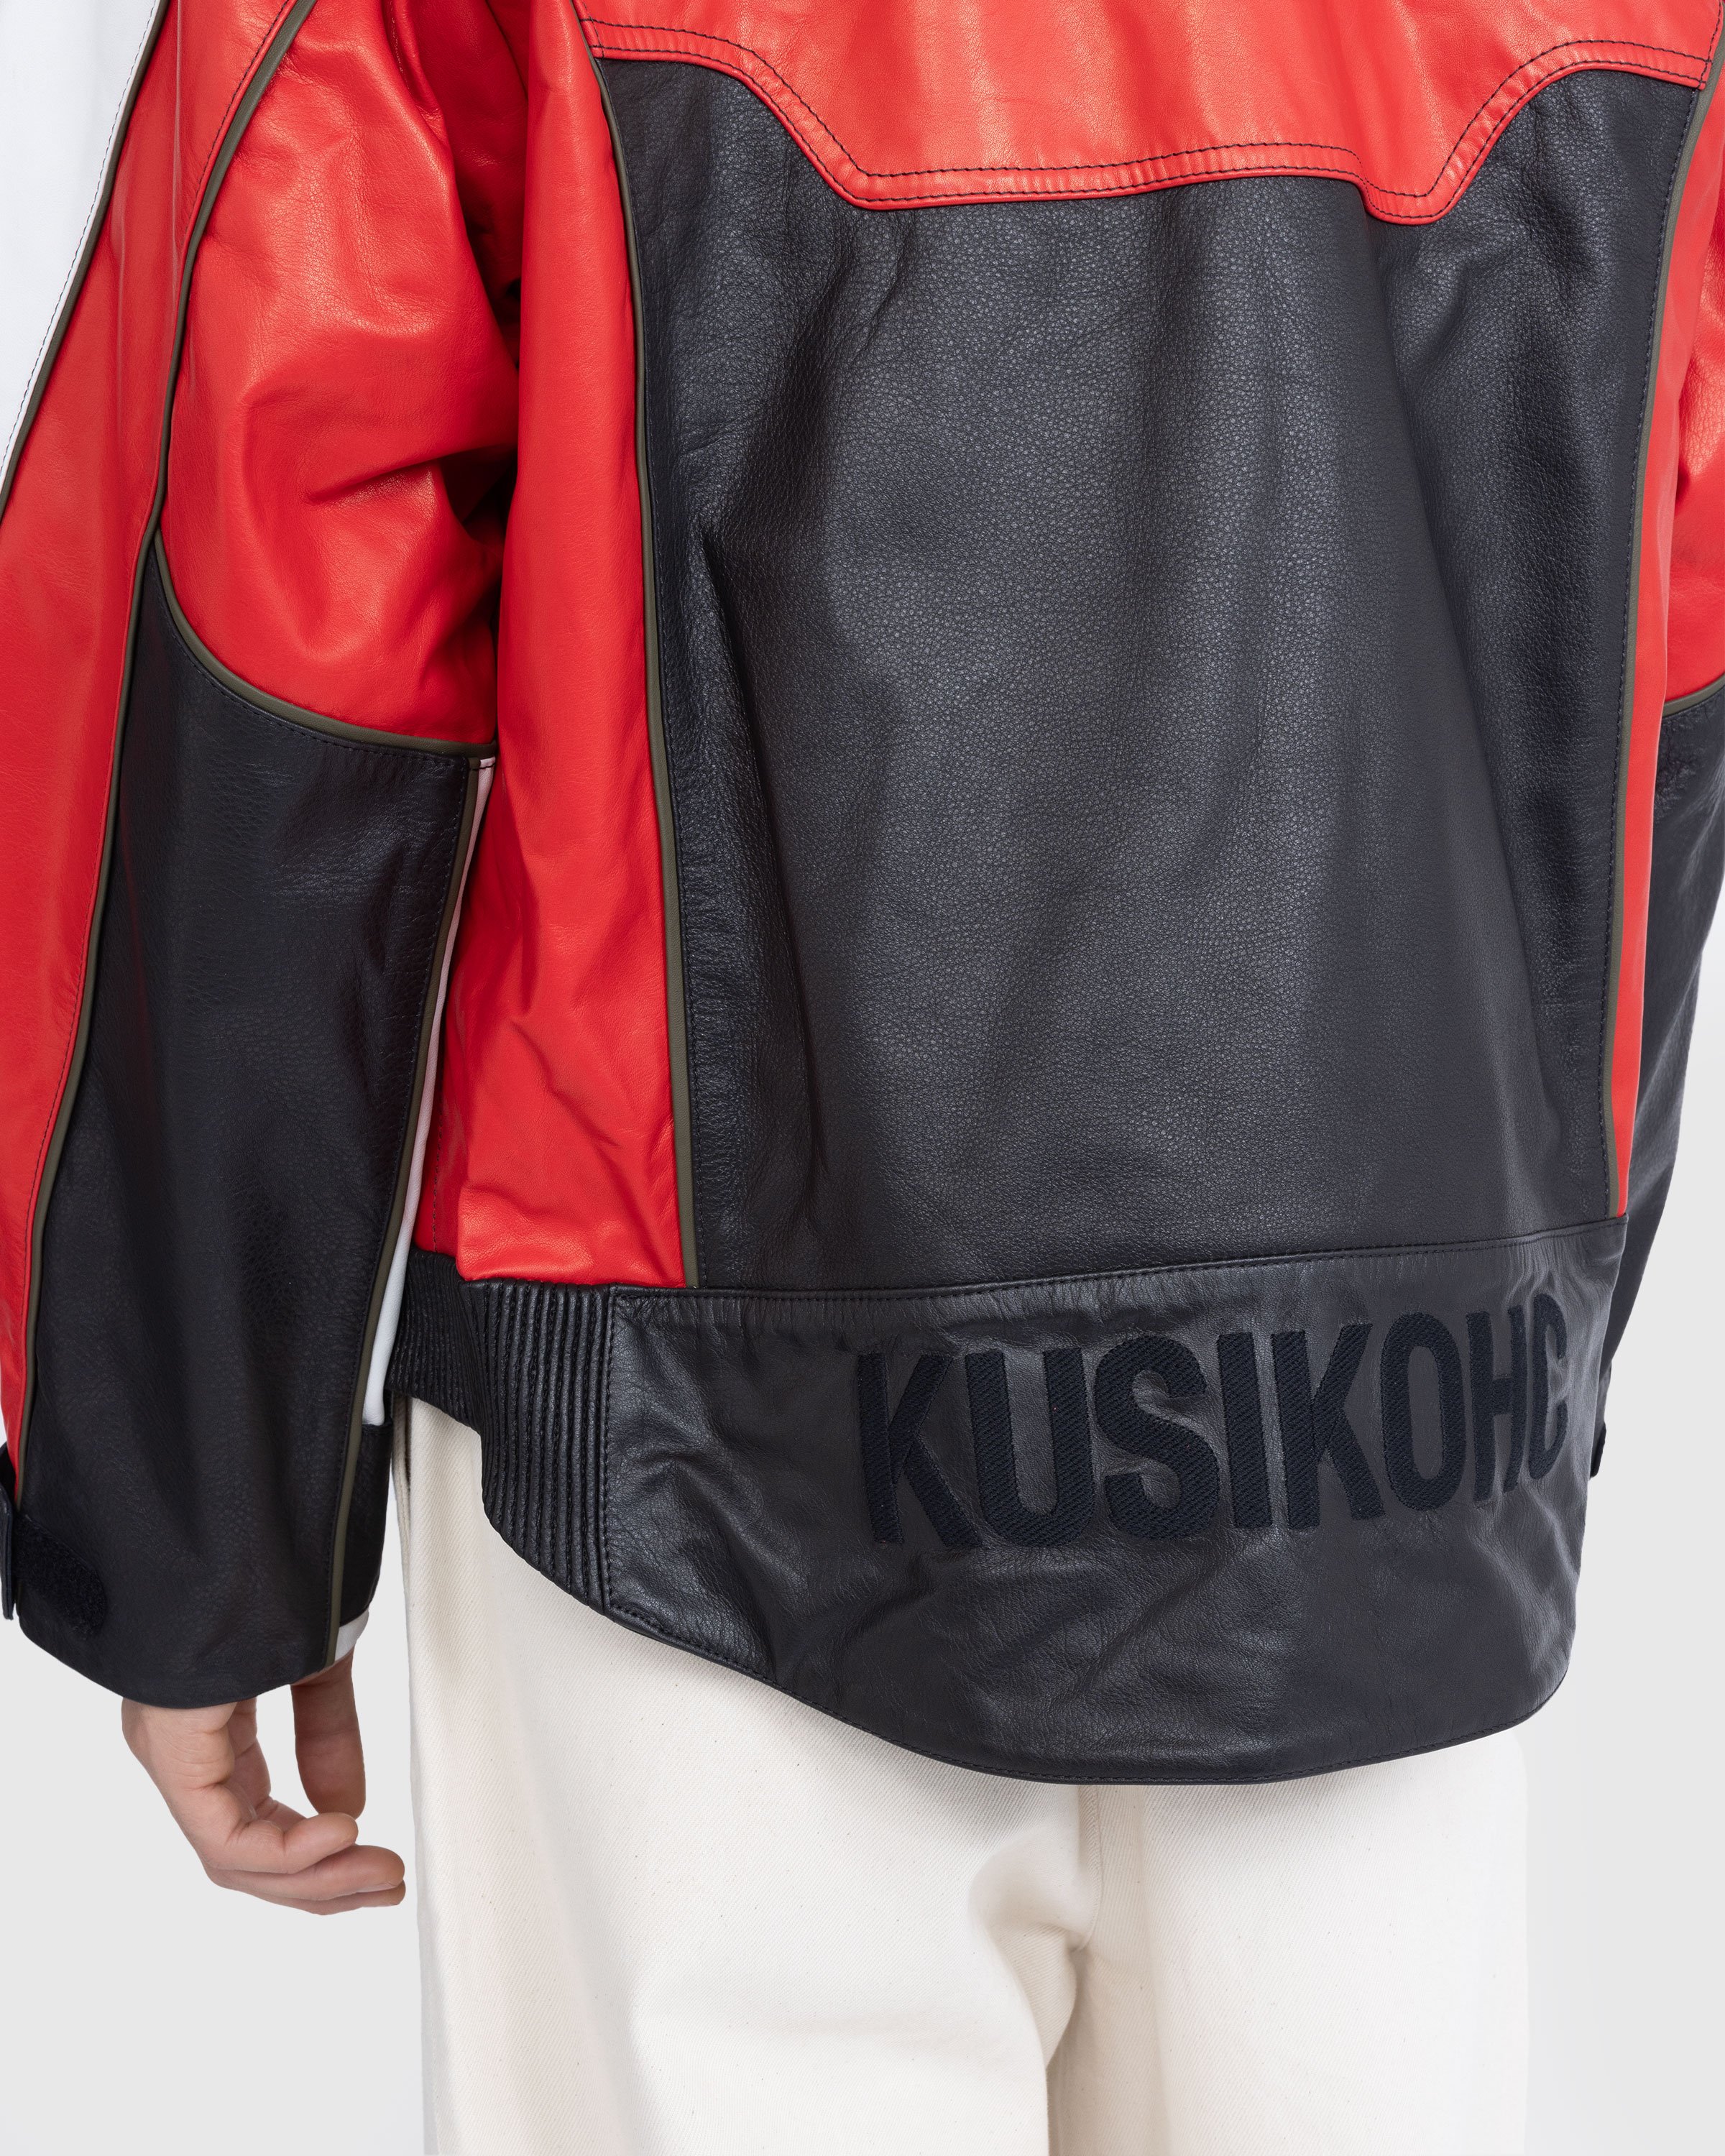 KUSIKOHC - RIDER LEATHER JACKETS - Leather Jackets - RED - Image 6